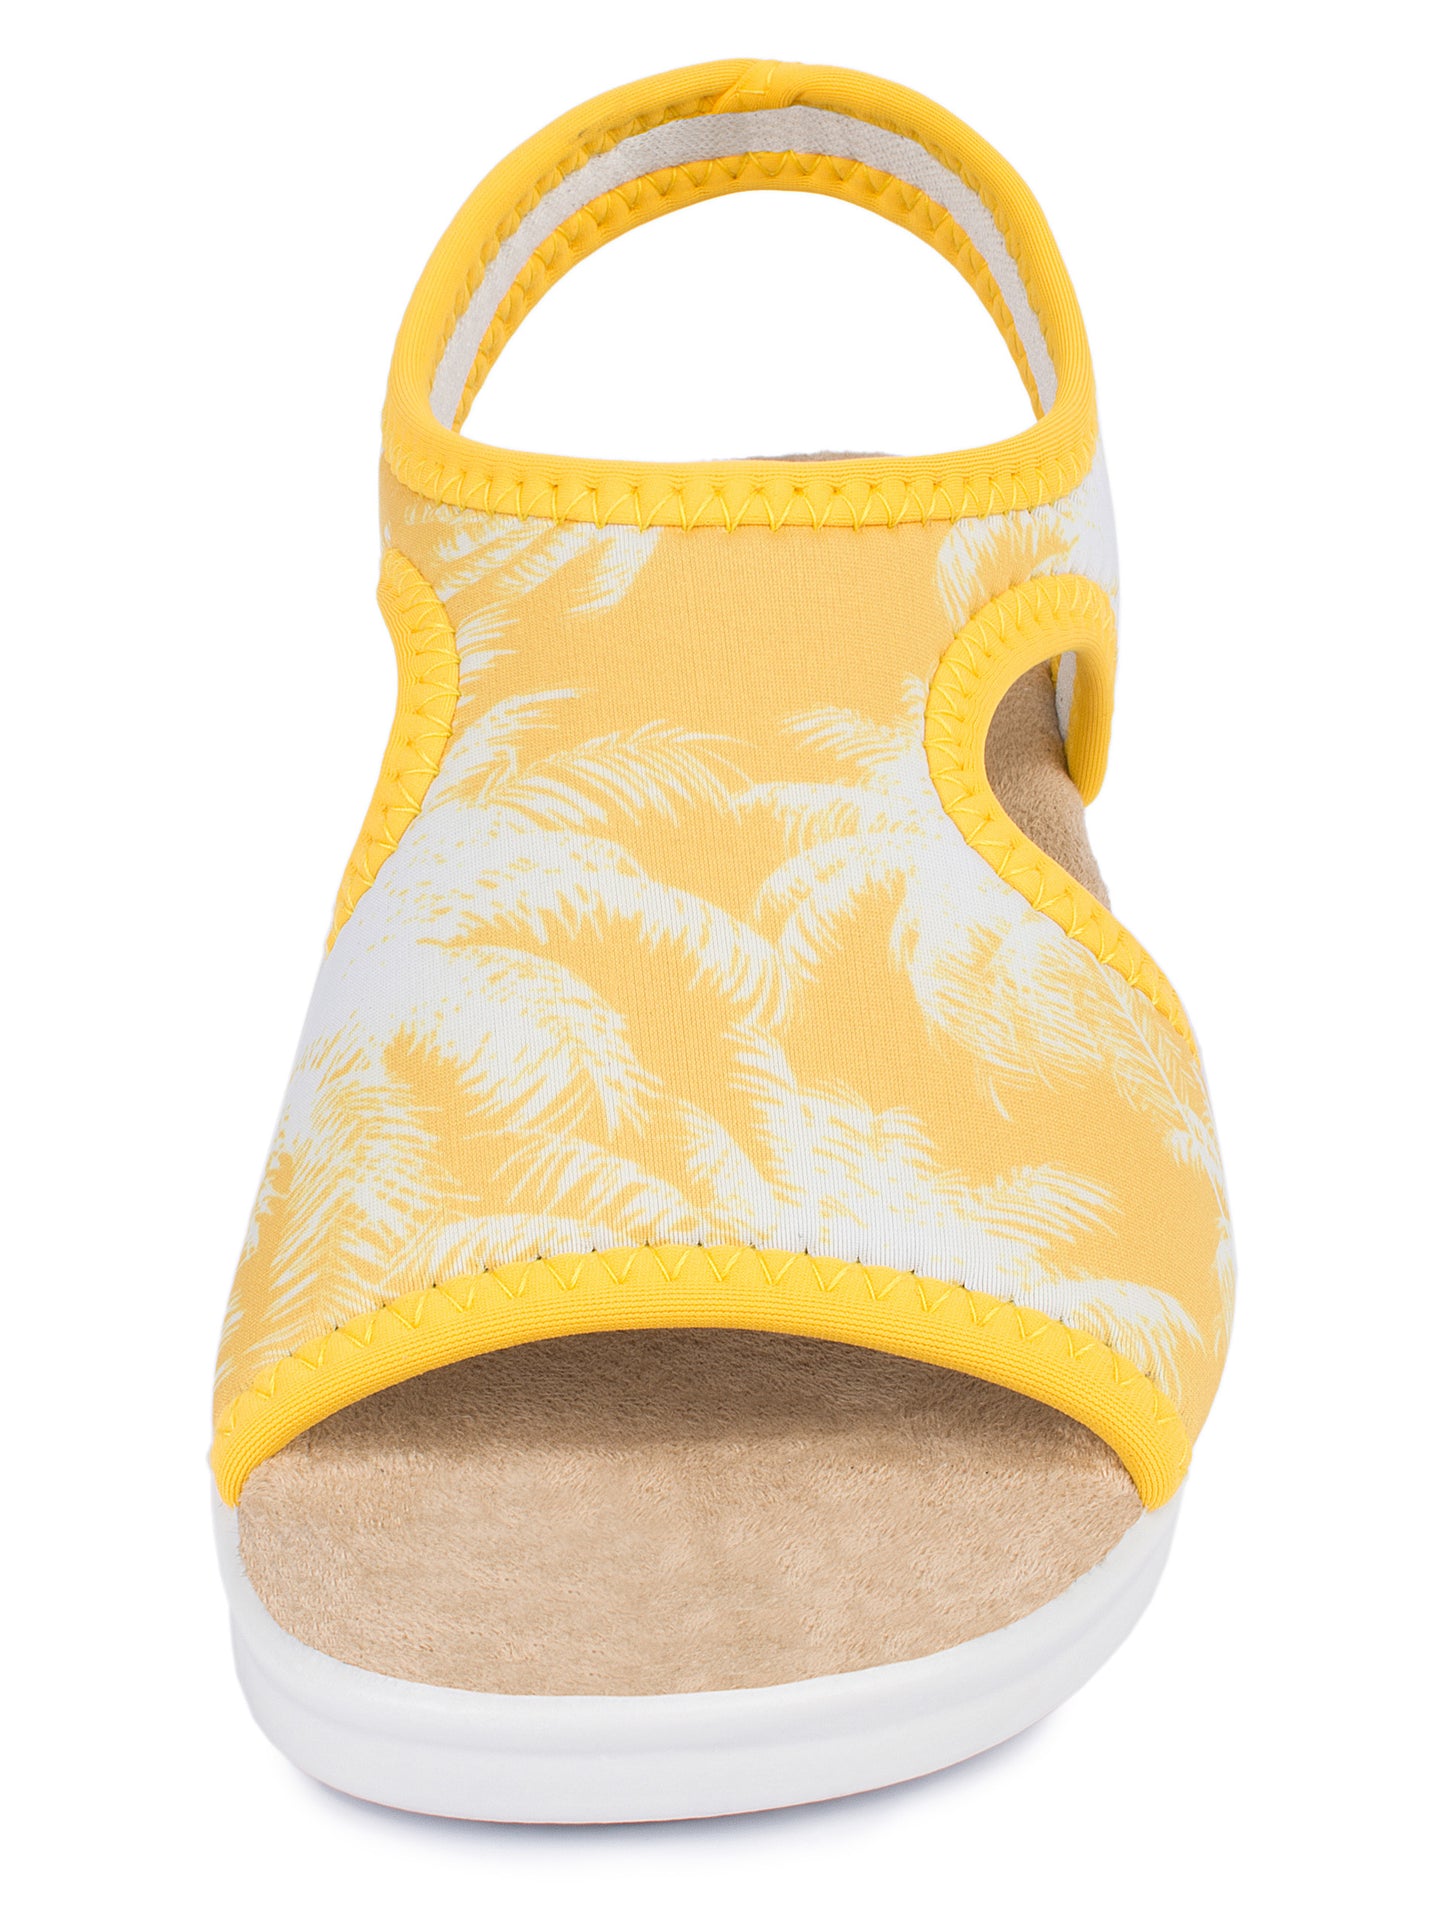 Damen Stretch Sandalette Modell Stretch 05 von Aerosoft in der Farbe Palme gelb von vorne